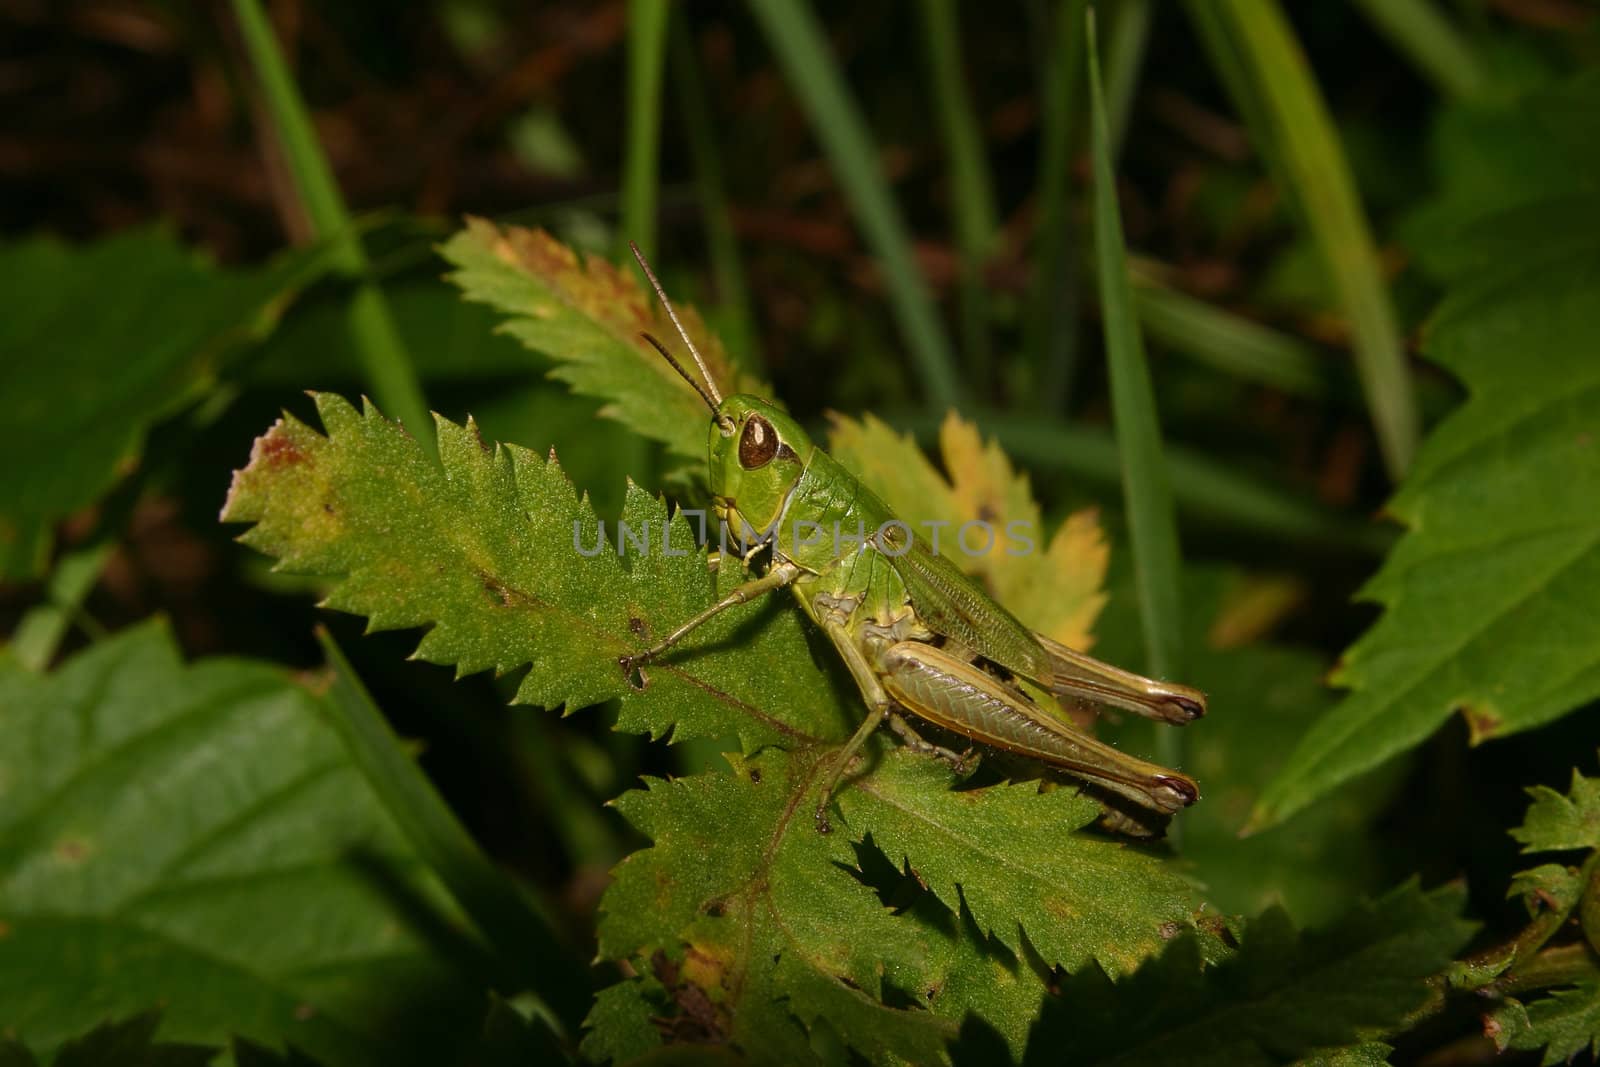 Common grasshopper (Chorthippus parallelus) by tdietrich